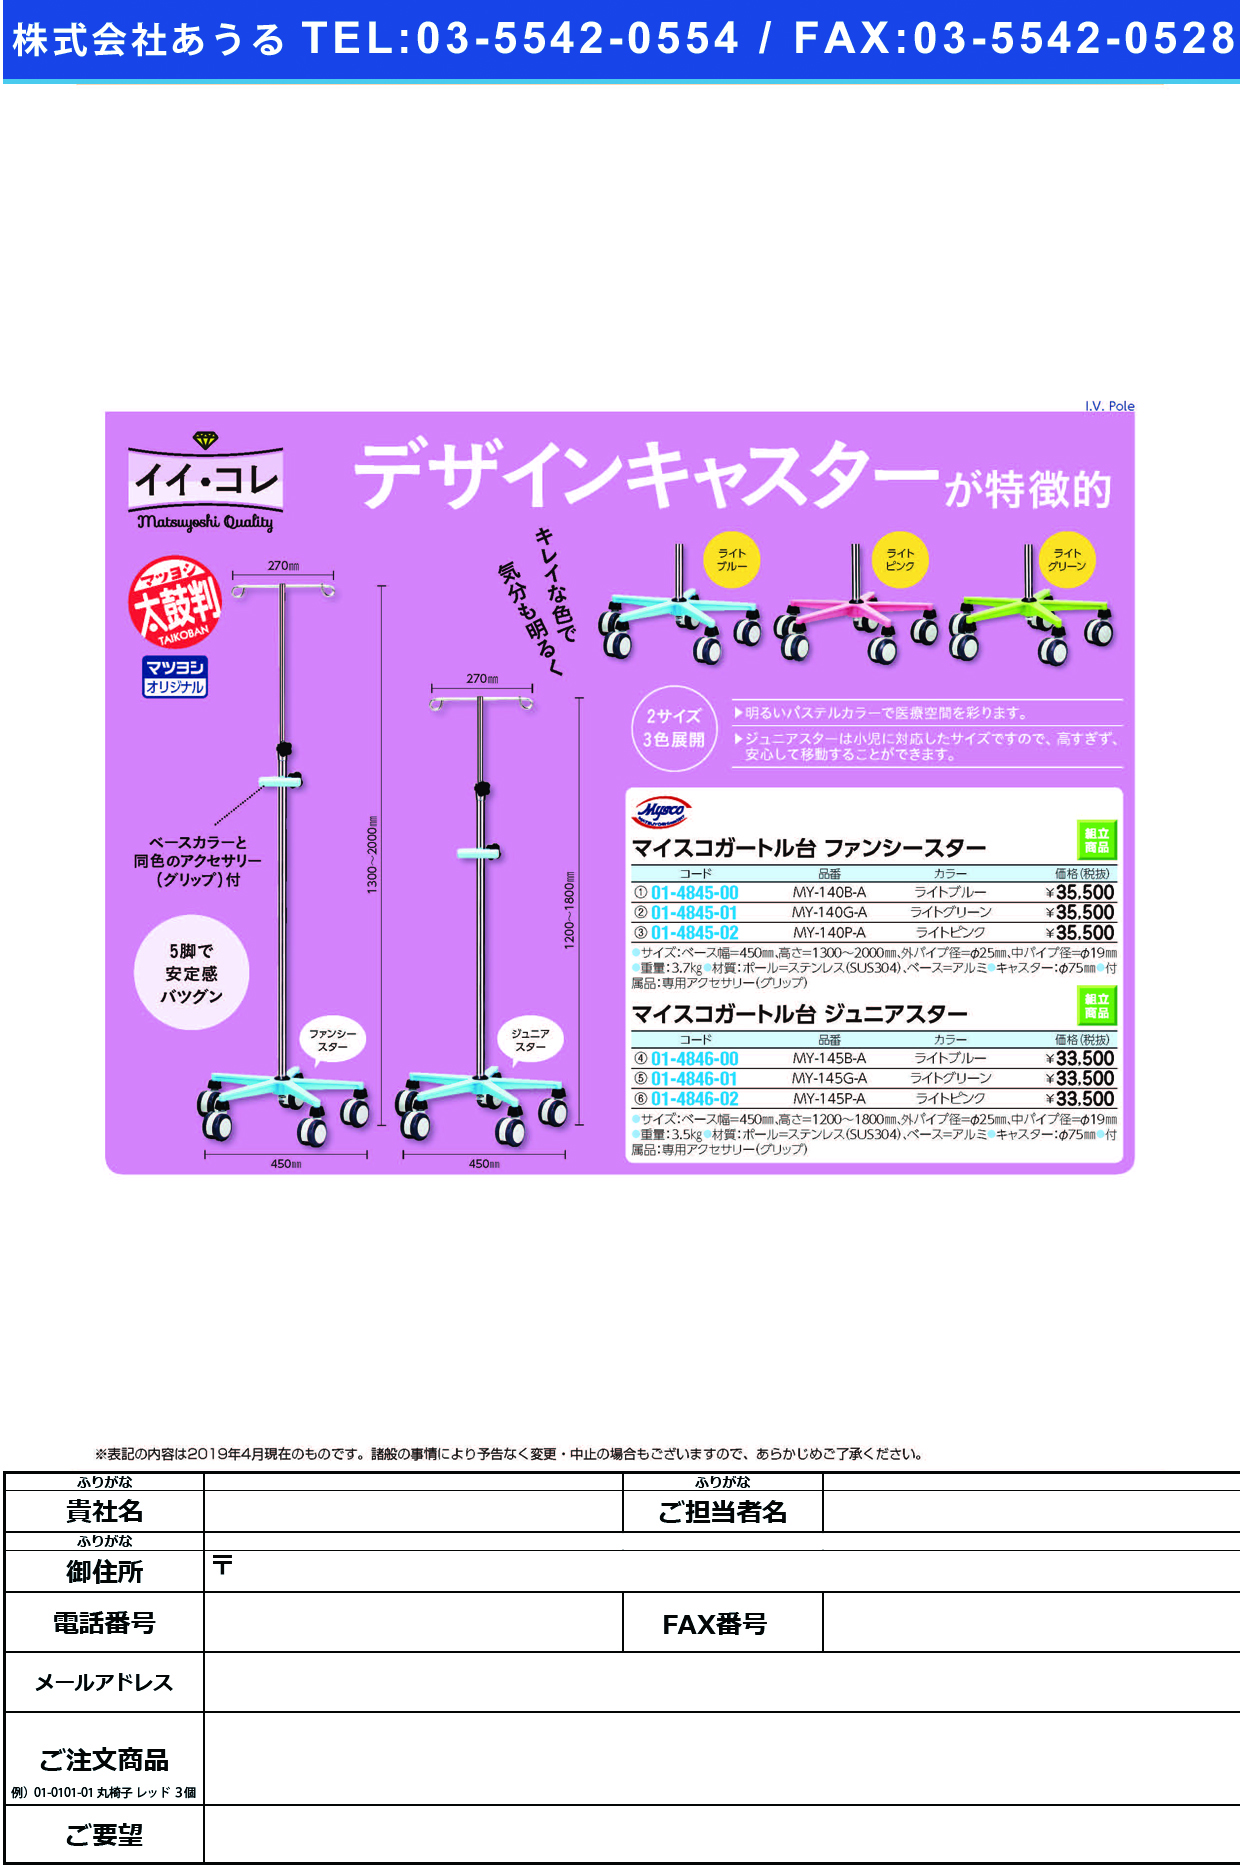 (01-4845-01)マイスコガートル台ファンシースター MY-140G-A(ﾗｲﾄｸﾞﾘｰﾝ) ﾏｲｽｺｶﾞｰﾄﾙﾀﾞｲﾌｧﾝｼｰｽﾀｰ【1台単位】【2019年カタログ商品】